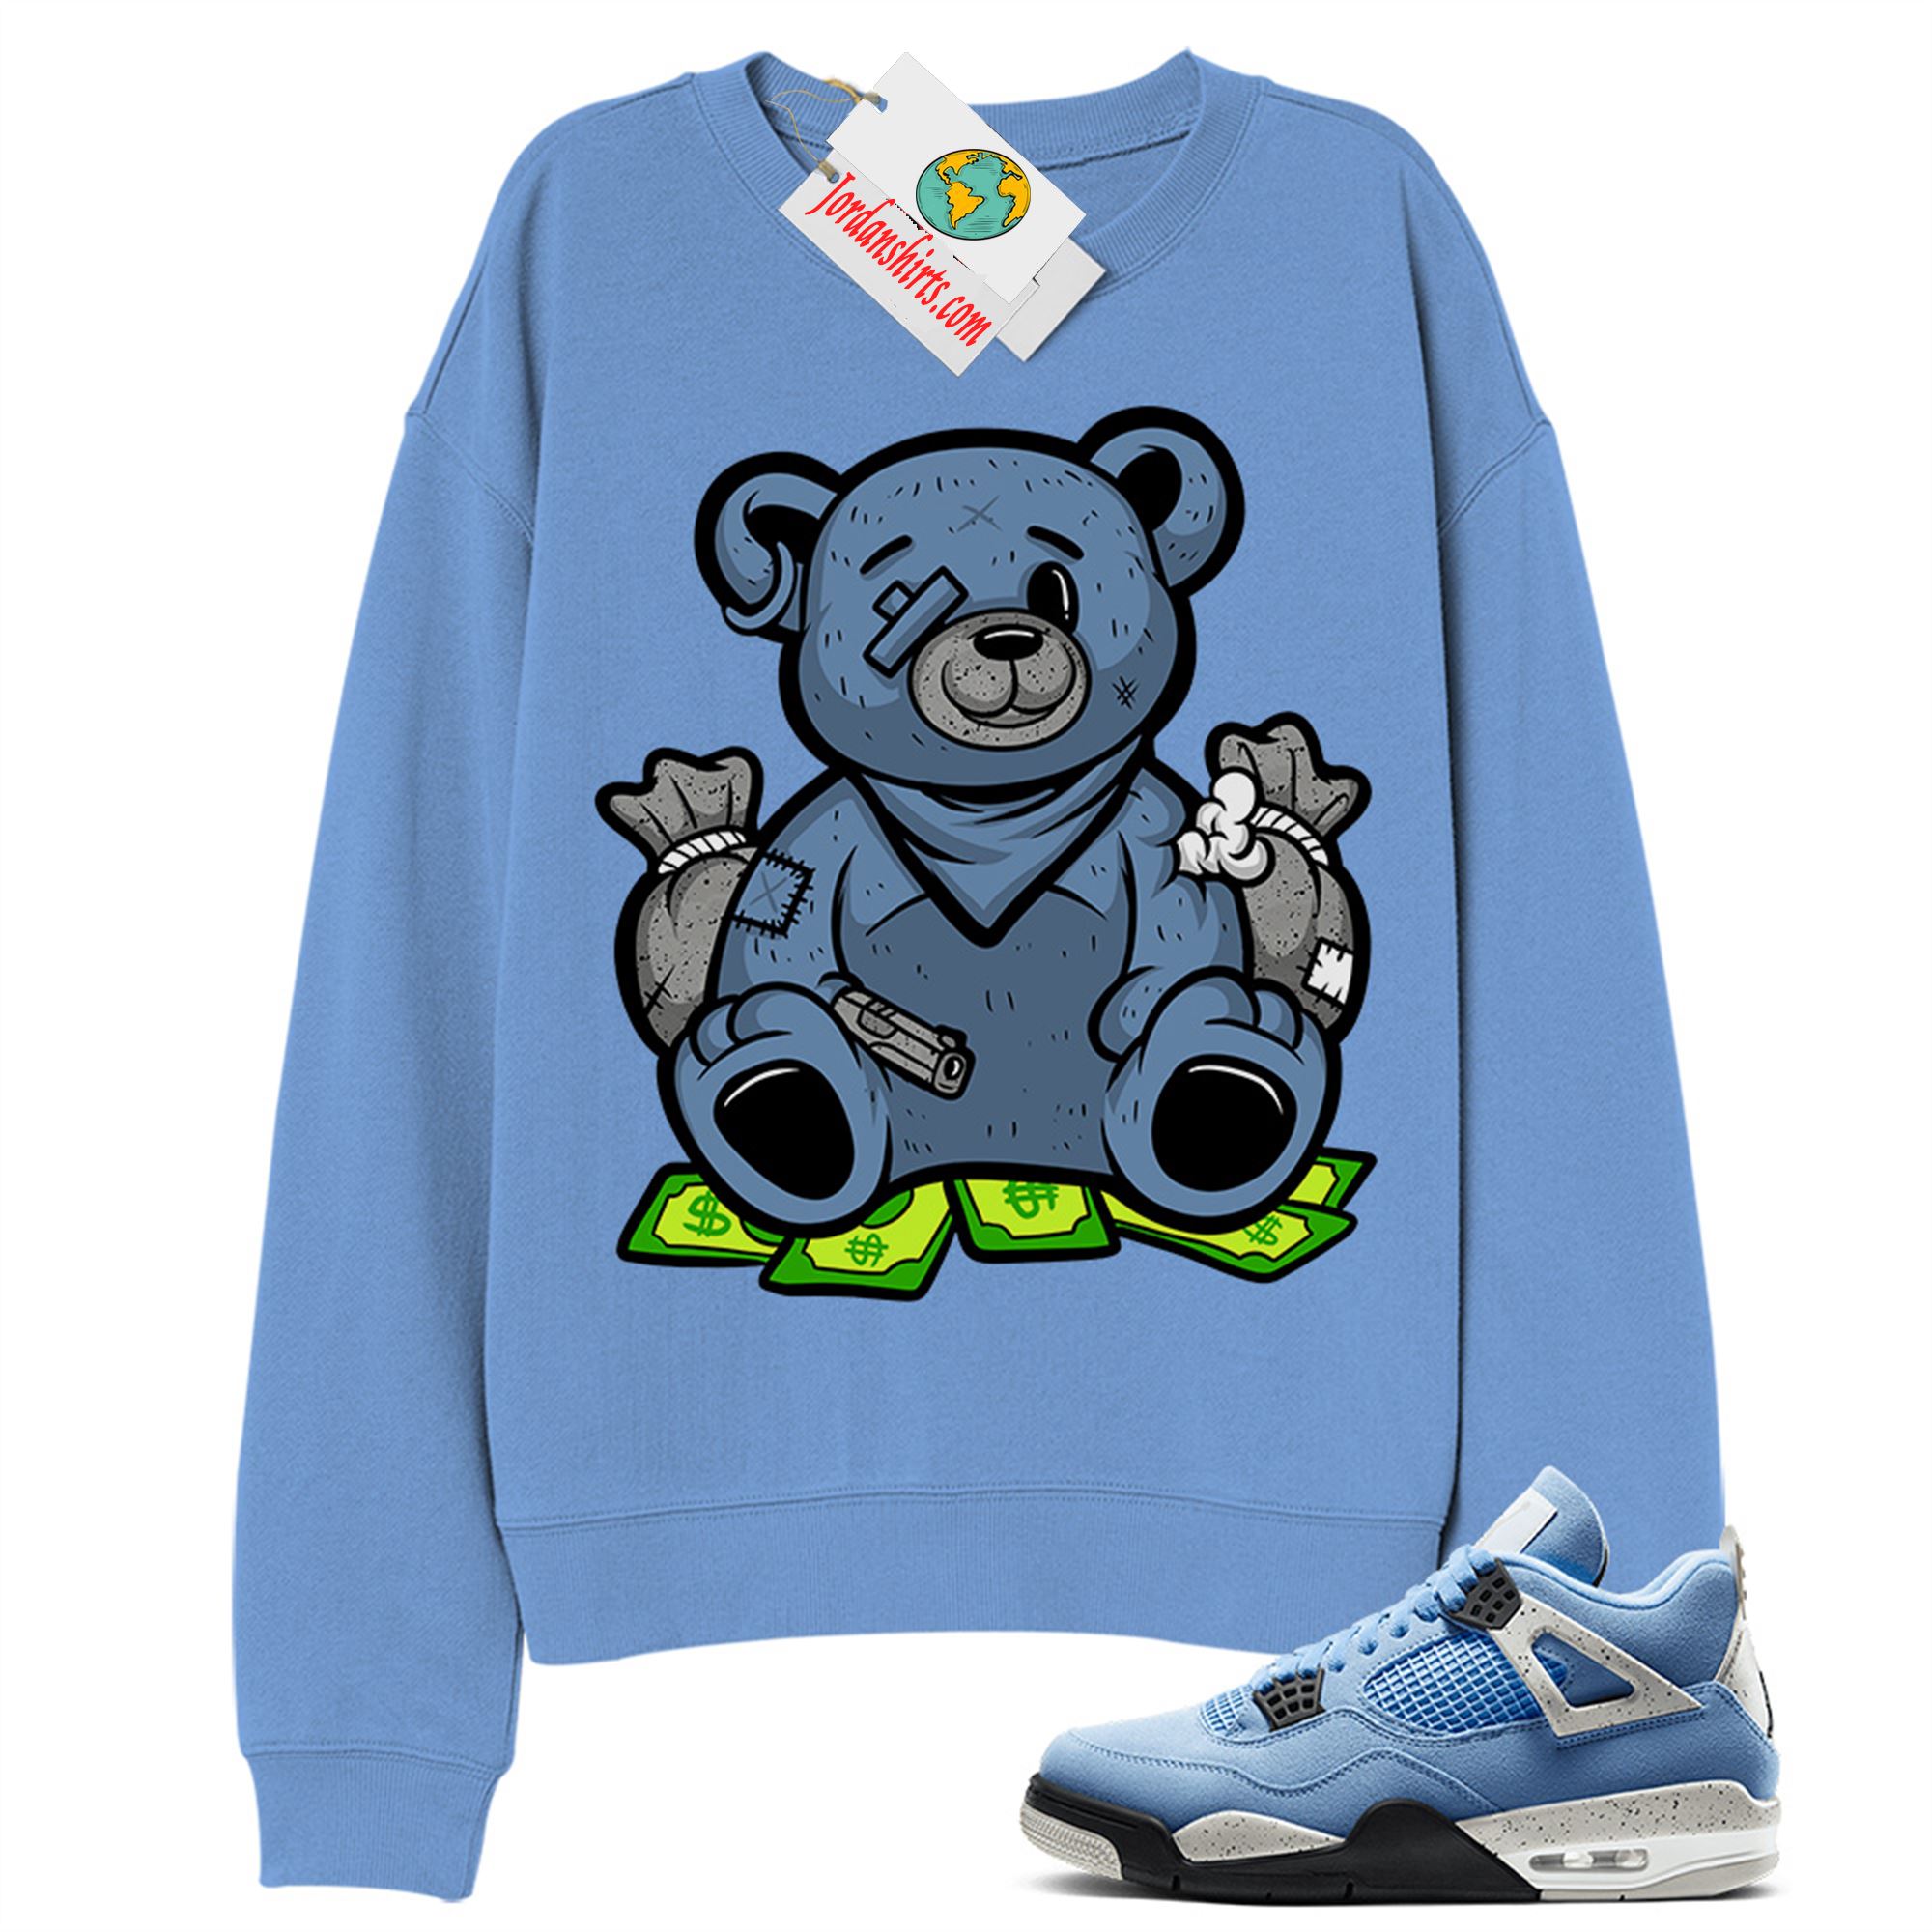 Jordan 4 Sweatshirt, Rich Teddy Bear Gangster Blue Sweatshirt Air Jordan 4 University Blue 4s Size Up To 5xl